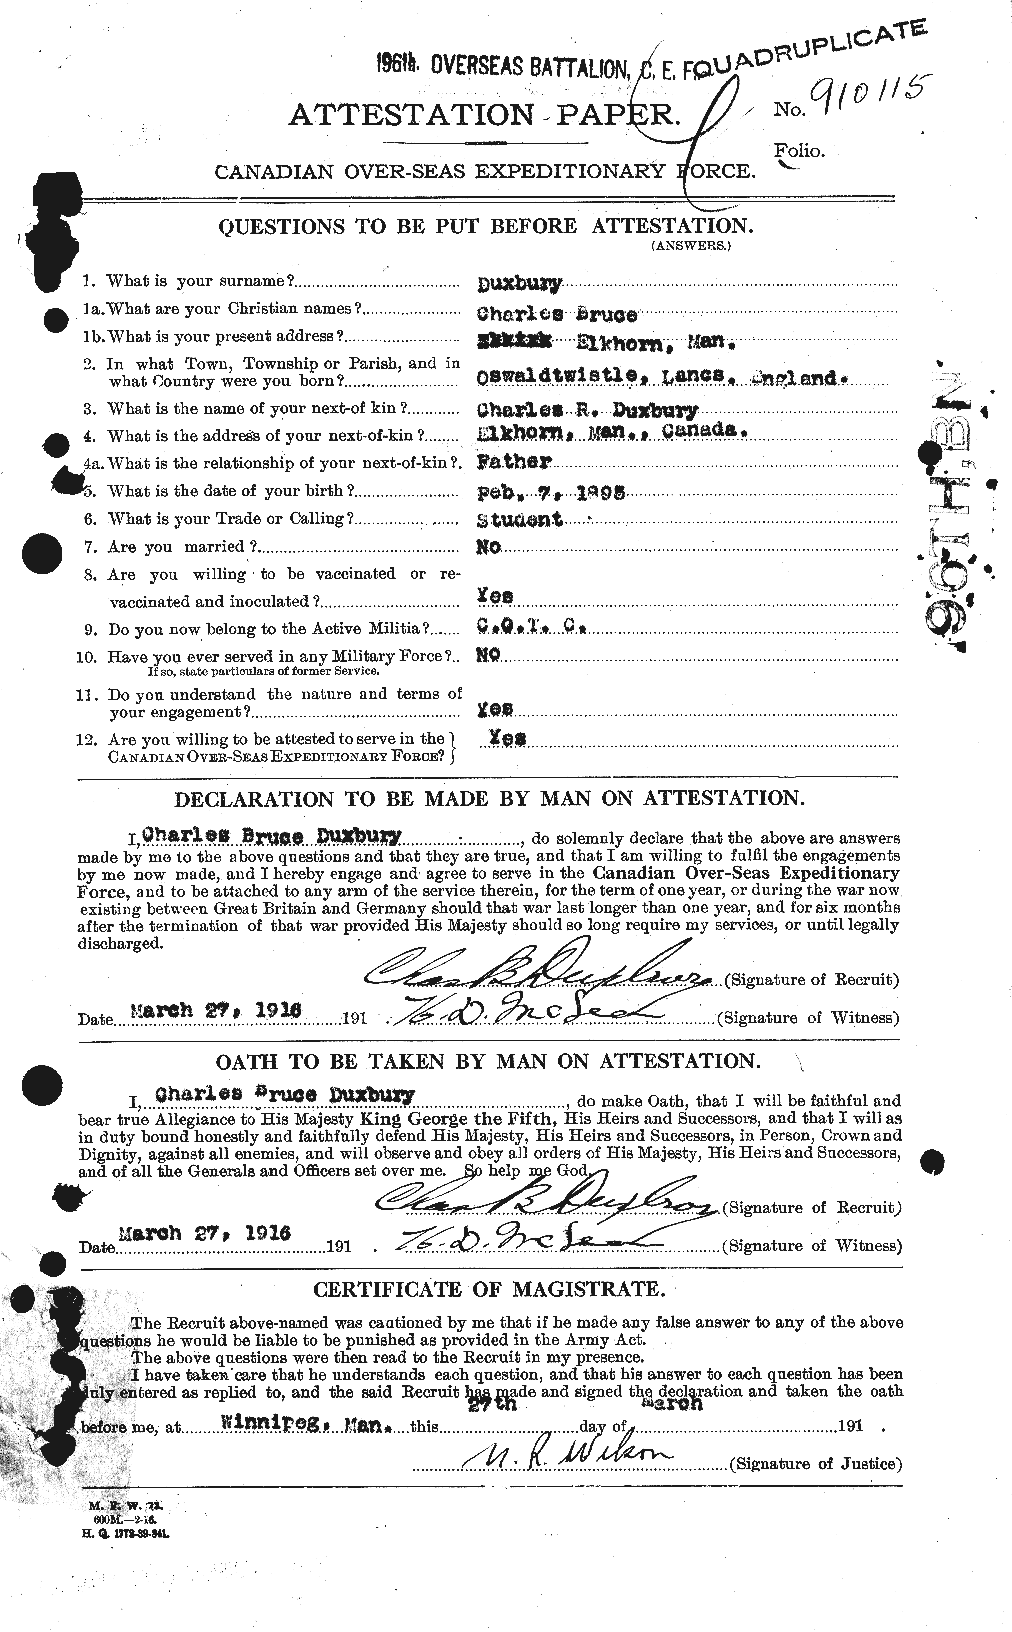 Dossiers du Personnel de la Première Guerre mondiale - CEC 305547a